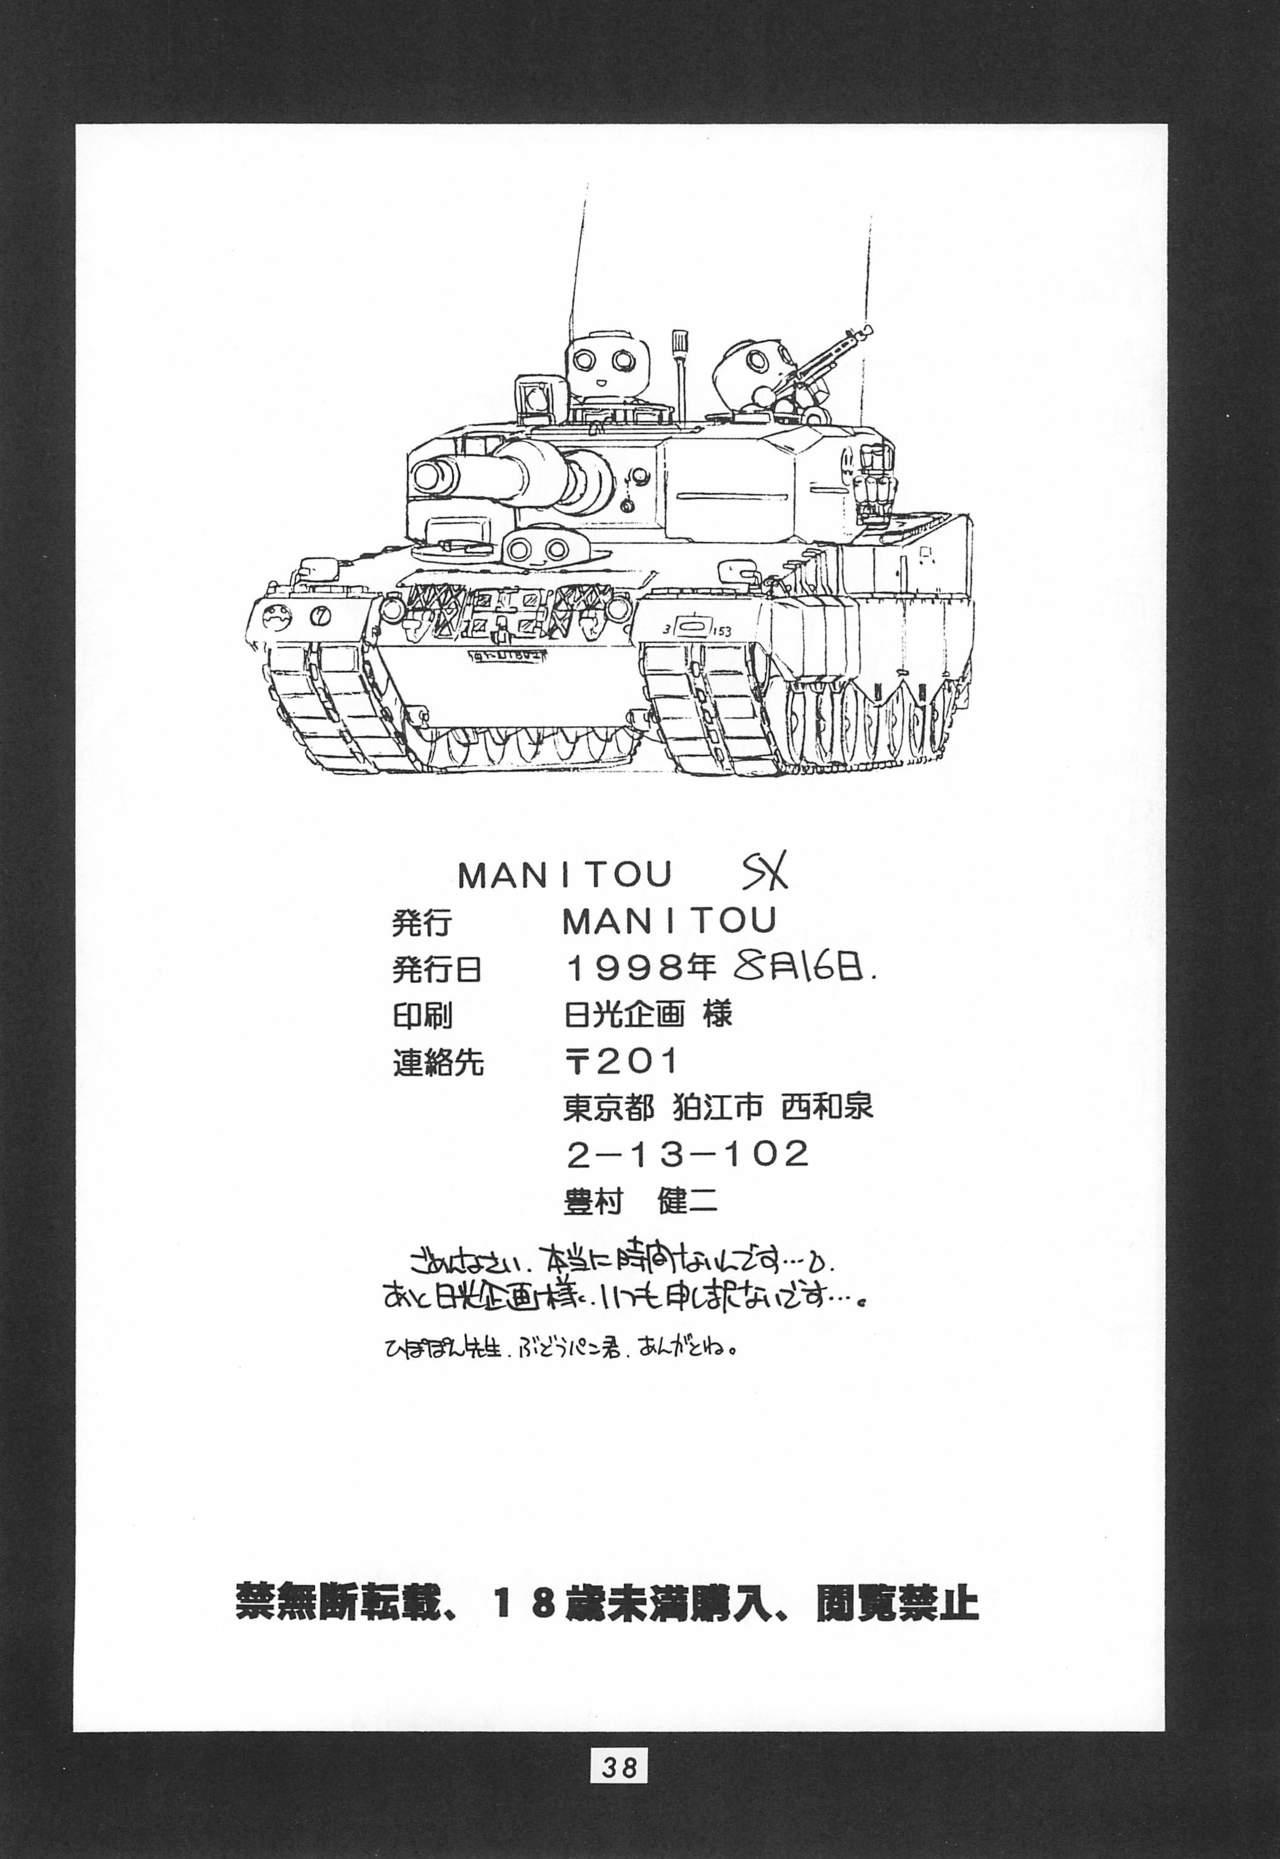 MANITOU SX 39